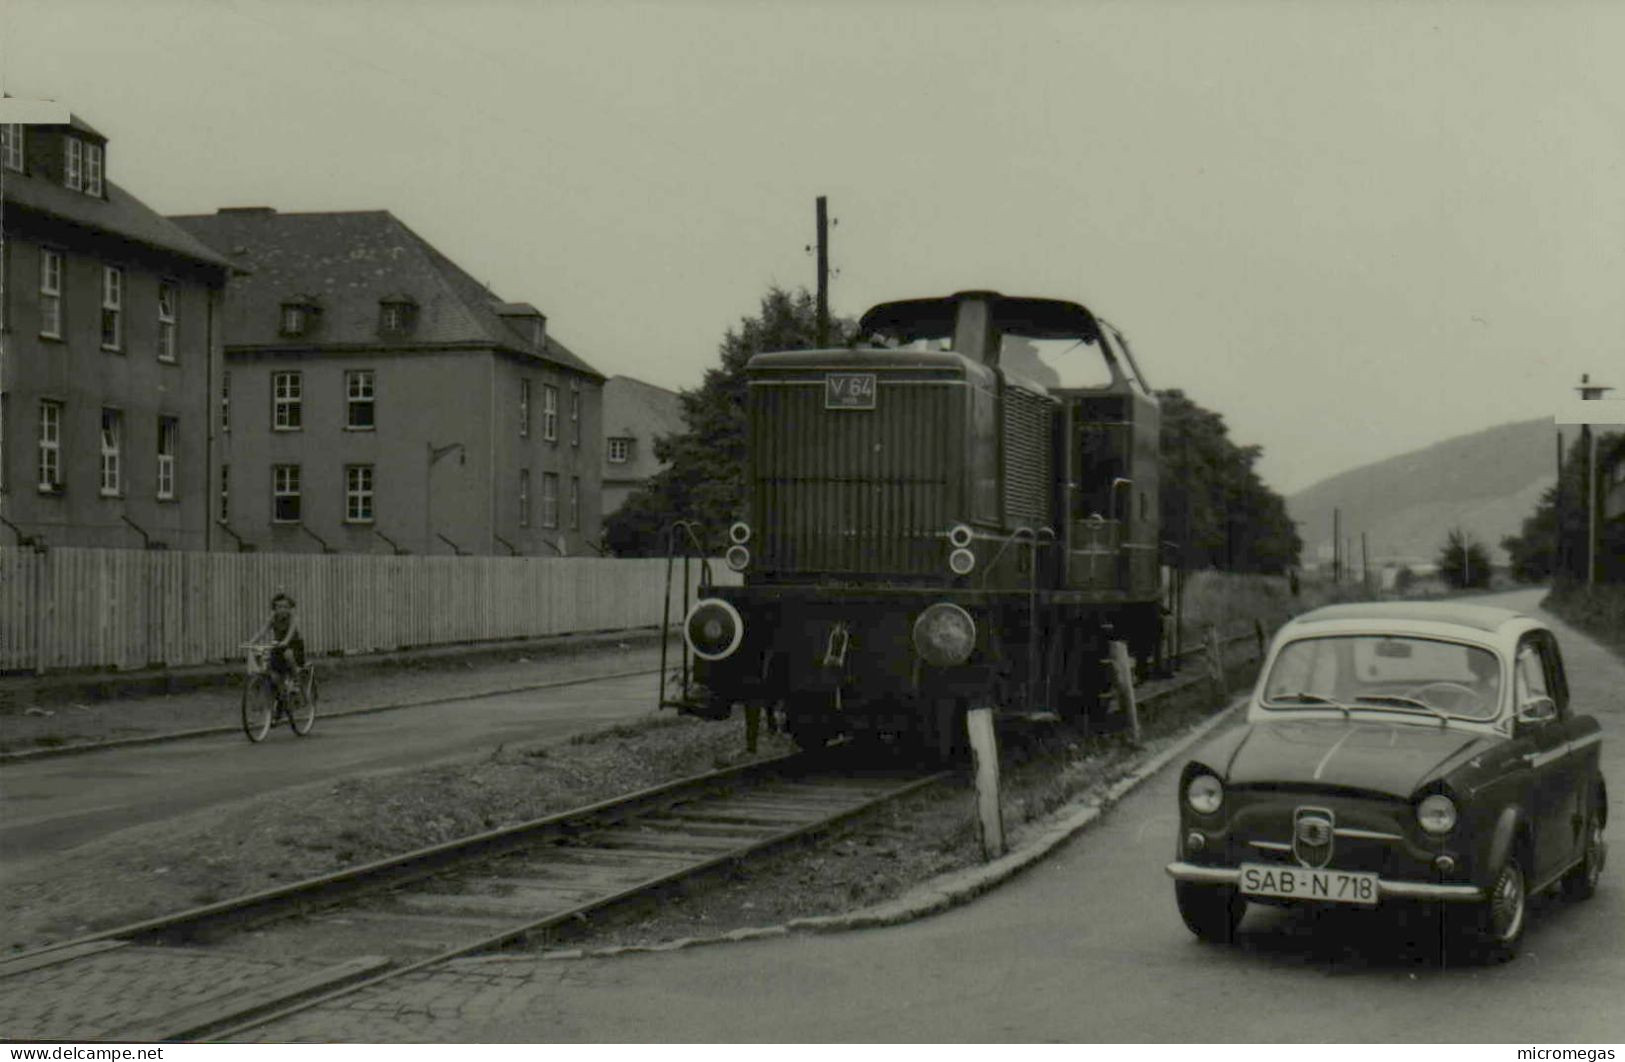 Reproduction - Moselbahn V 64, 1-8-1967 - Eisenbahnen